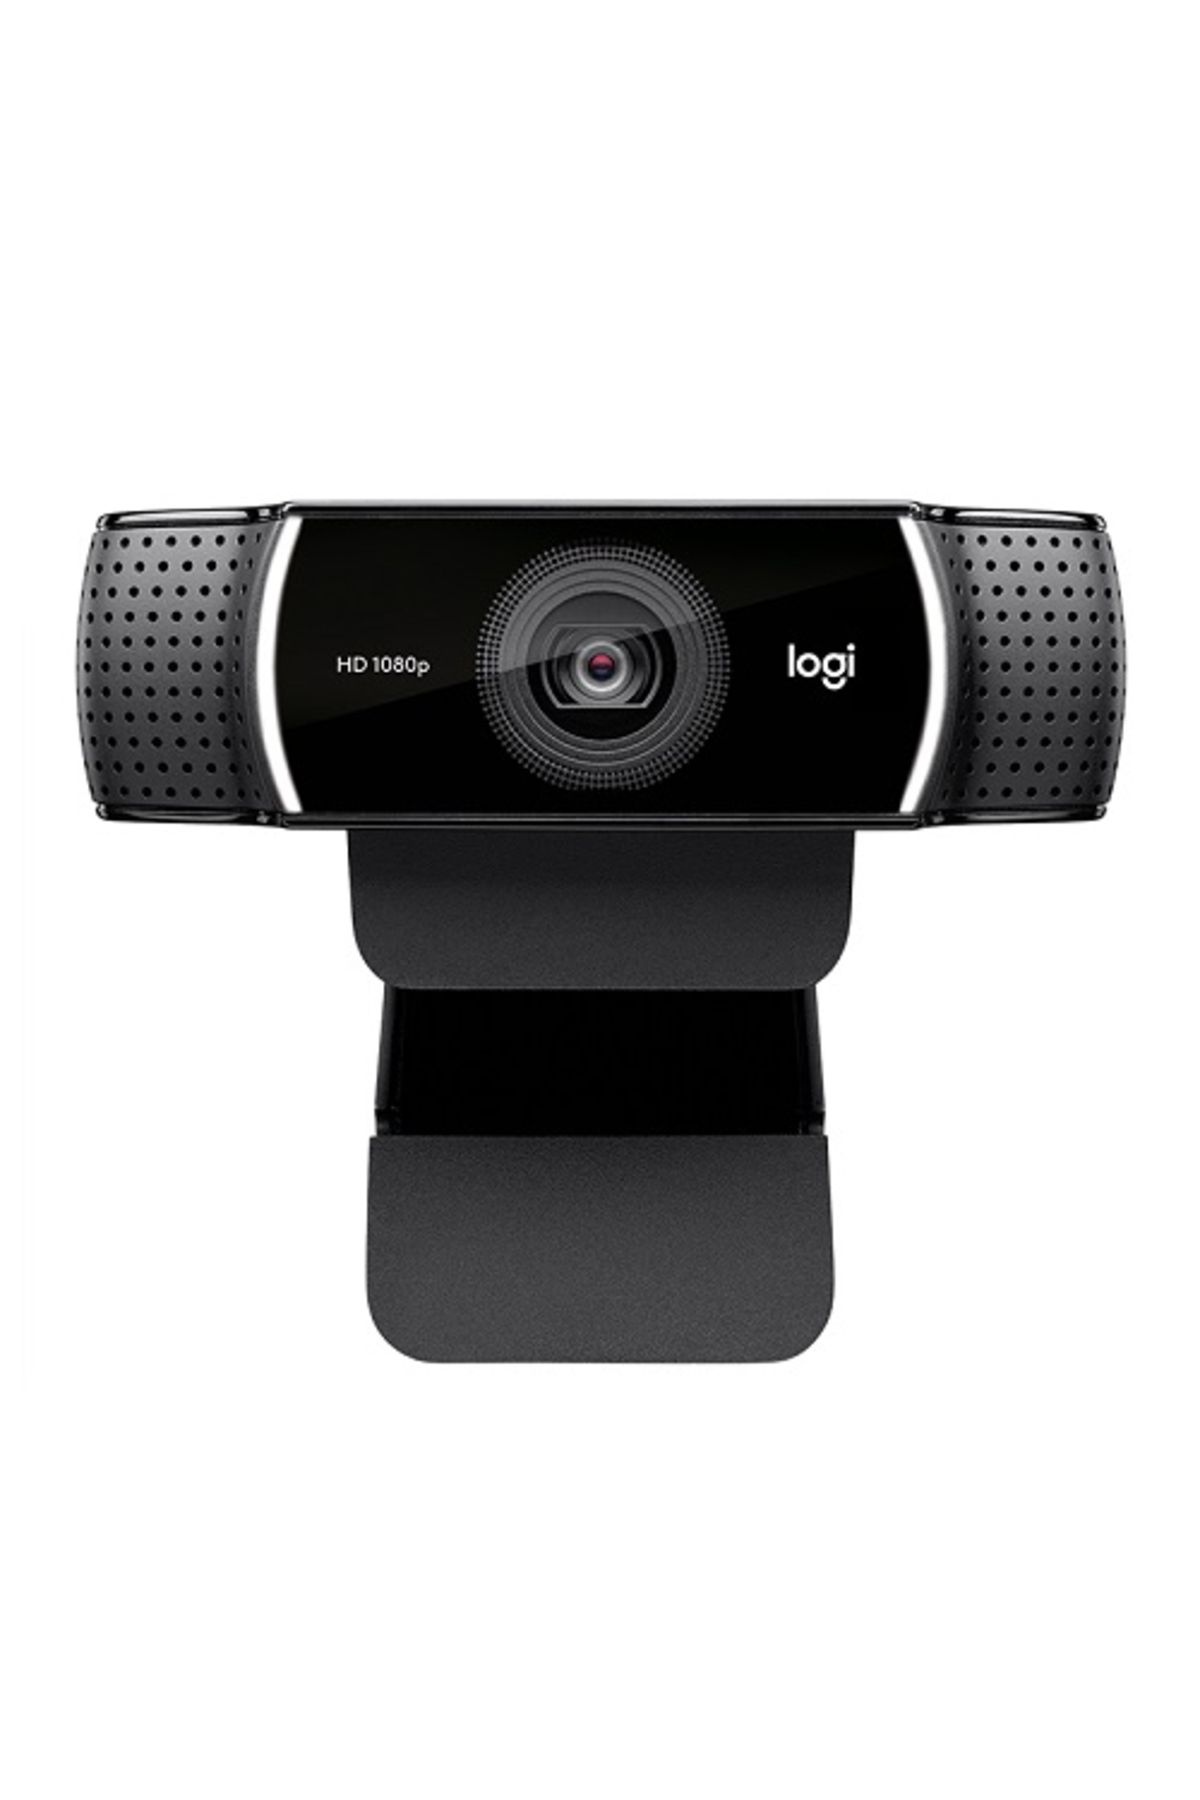 logitech C922 Full HD 1080p Yayıncılar için Profesyonel Web Kamerası - Siyah